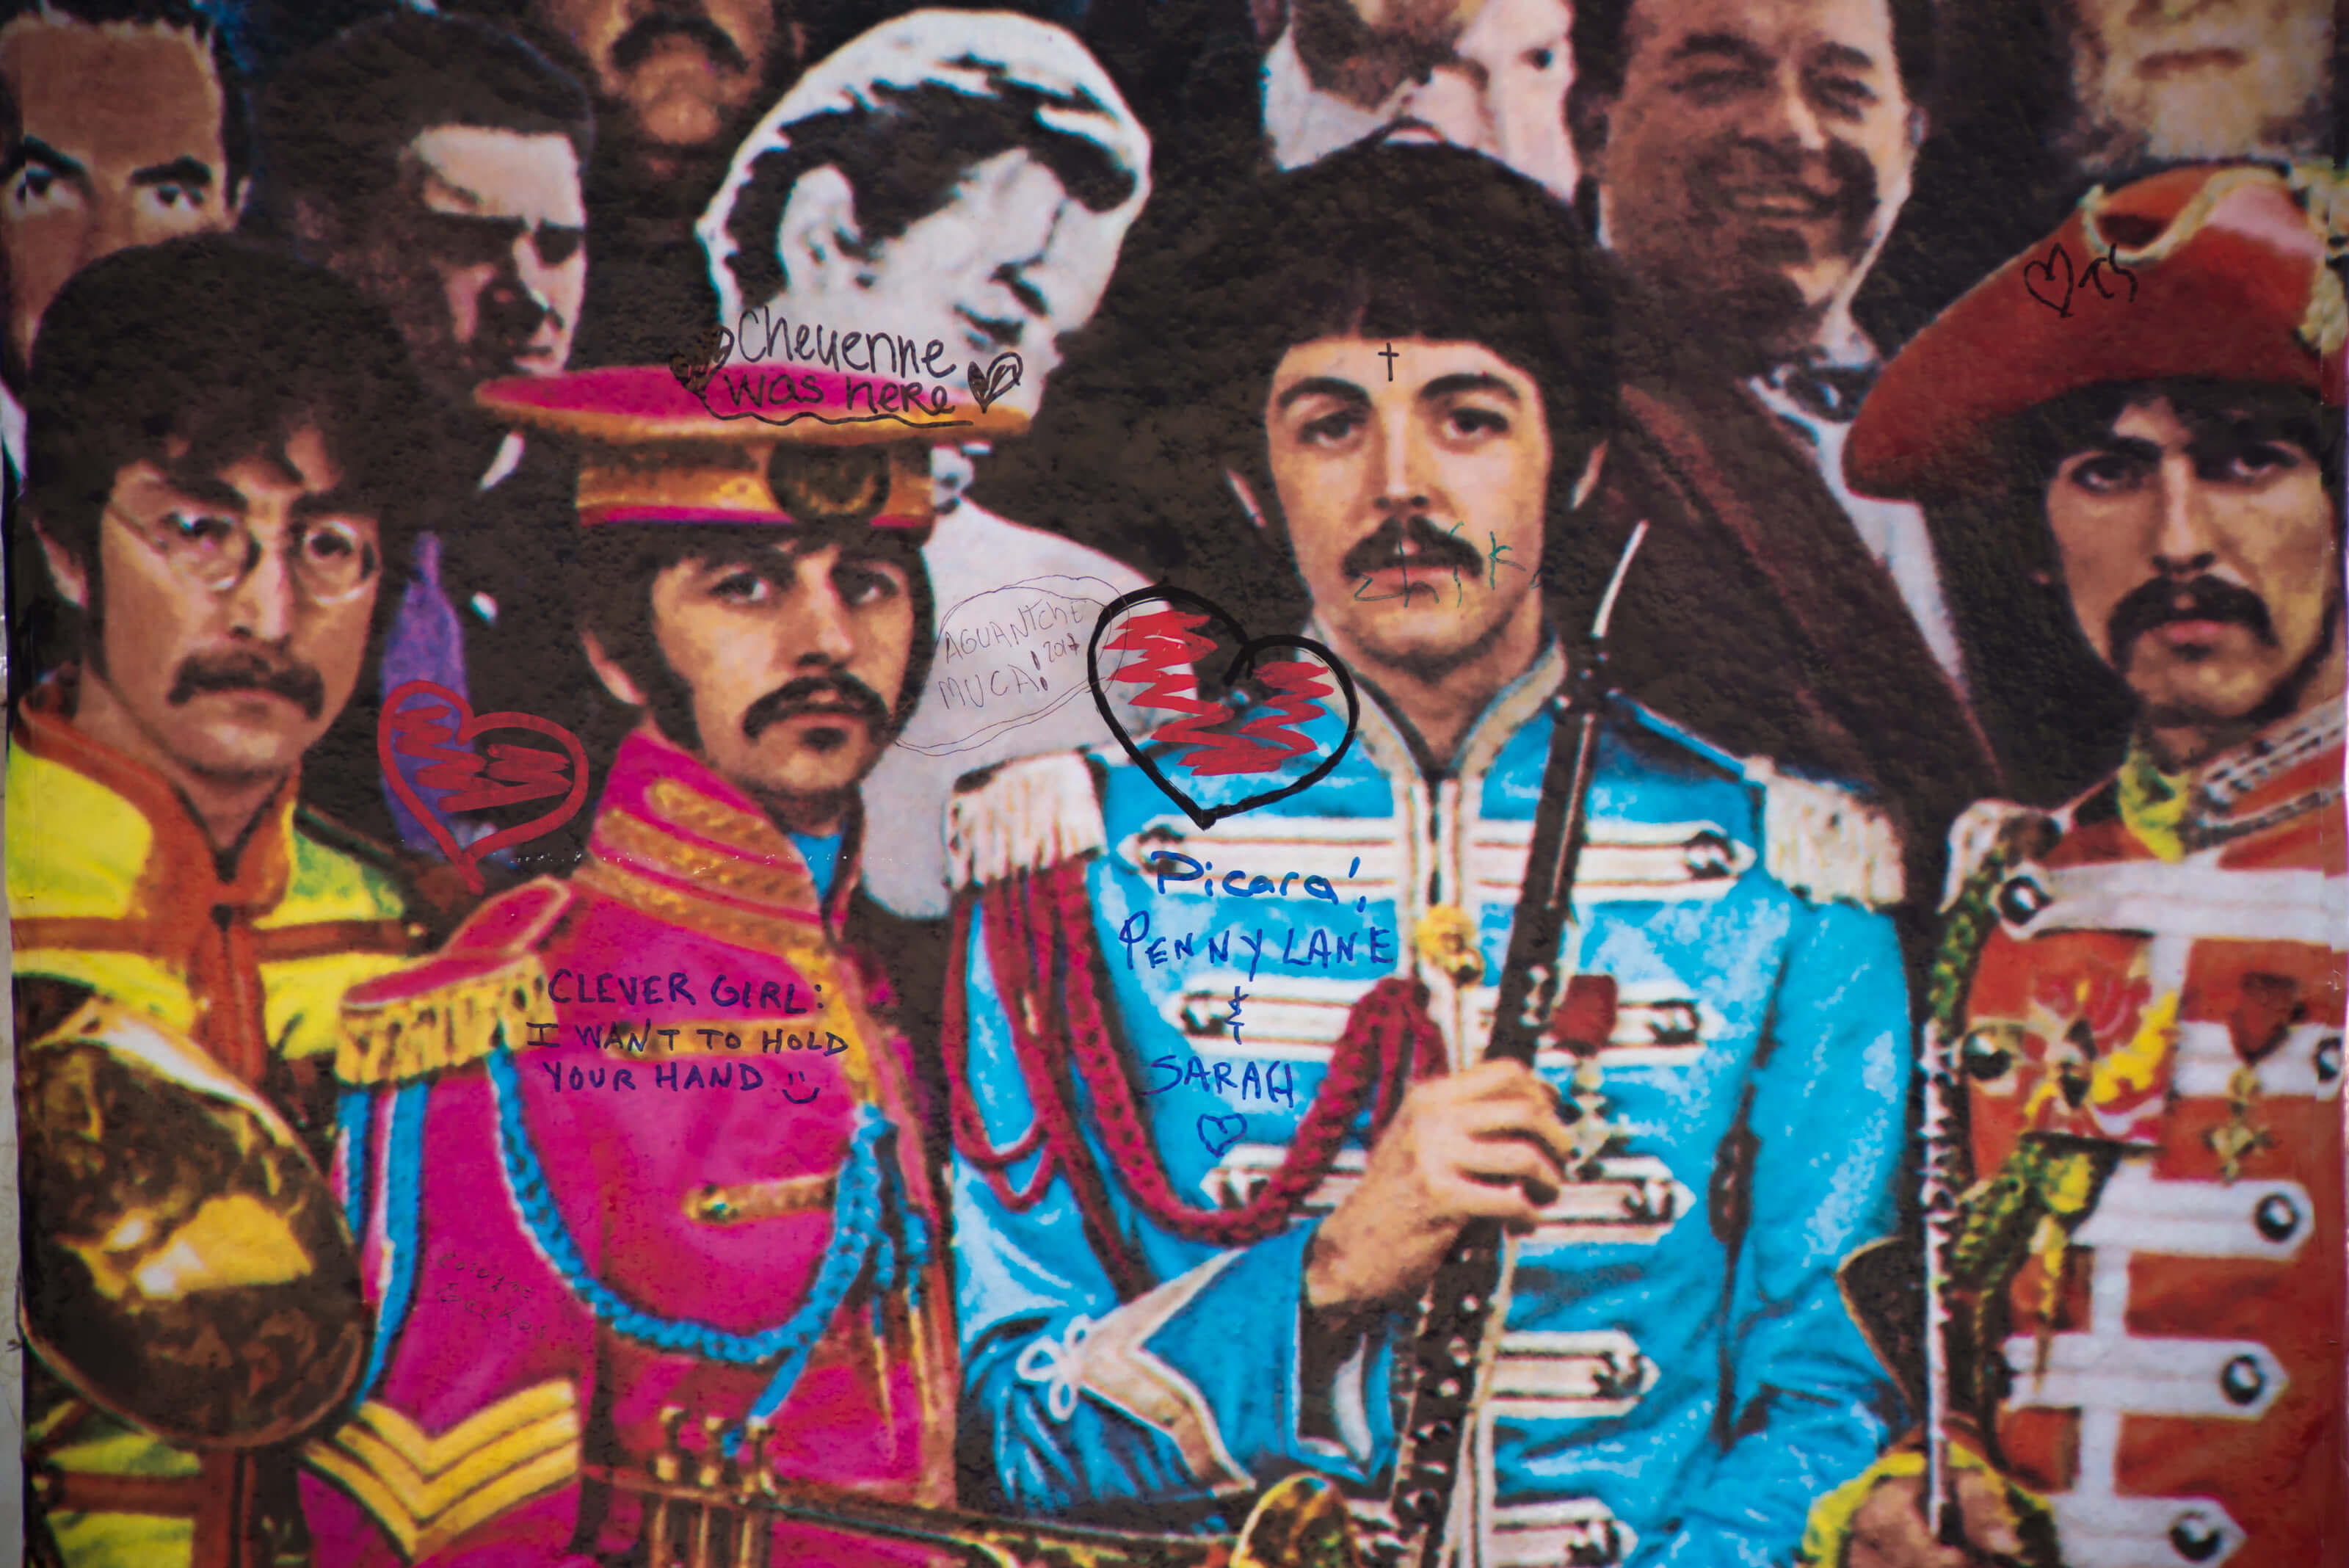 John Lennon sagte: „Sgt.“ der Beatles Pepper‘ „Goesnt Go Anywhere“